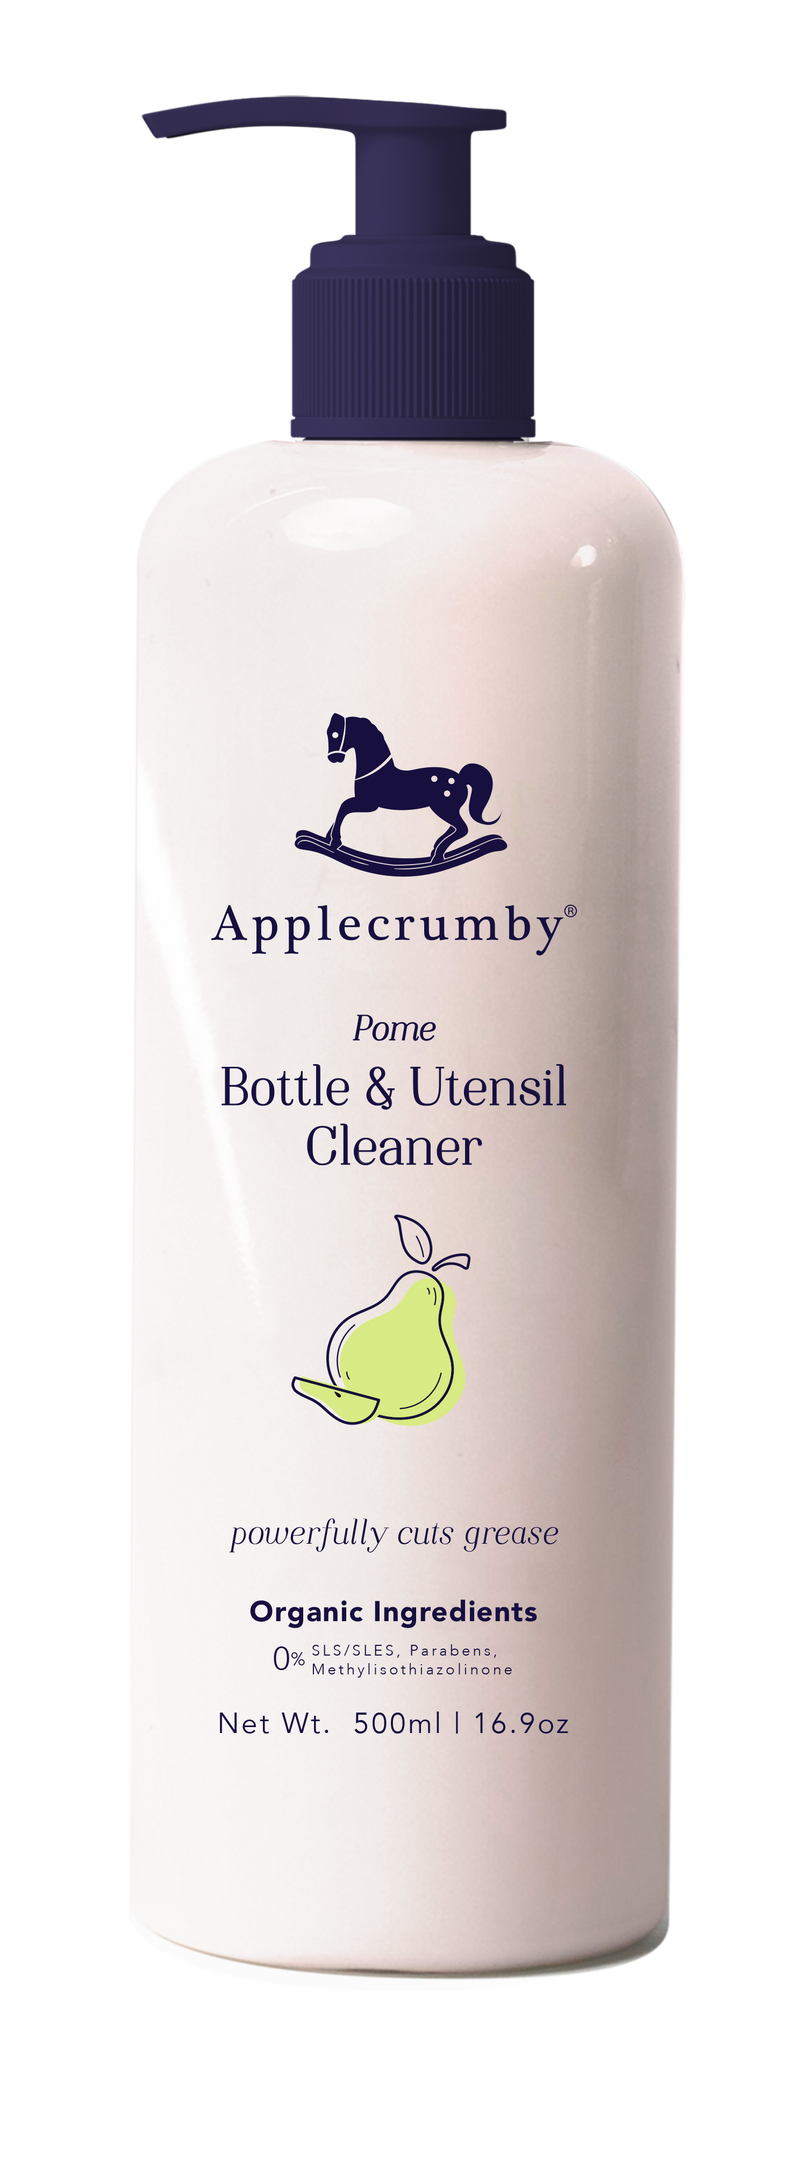 Applecrumby Bottle & Utensil Cleaner 500ml - Pome